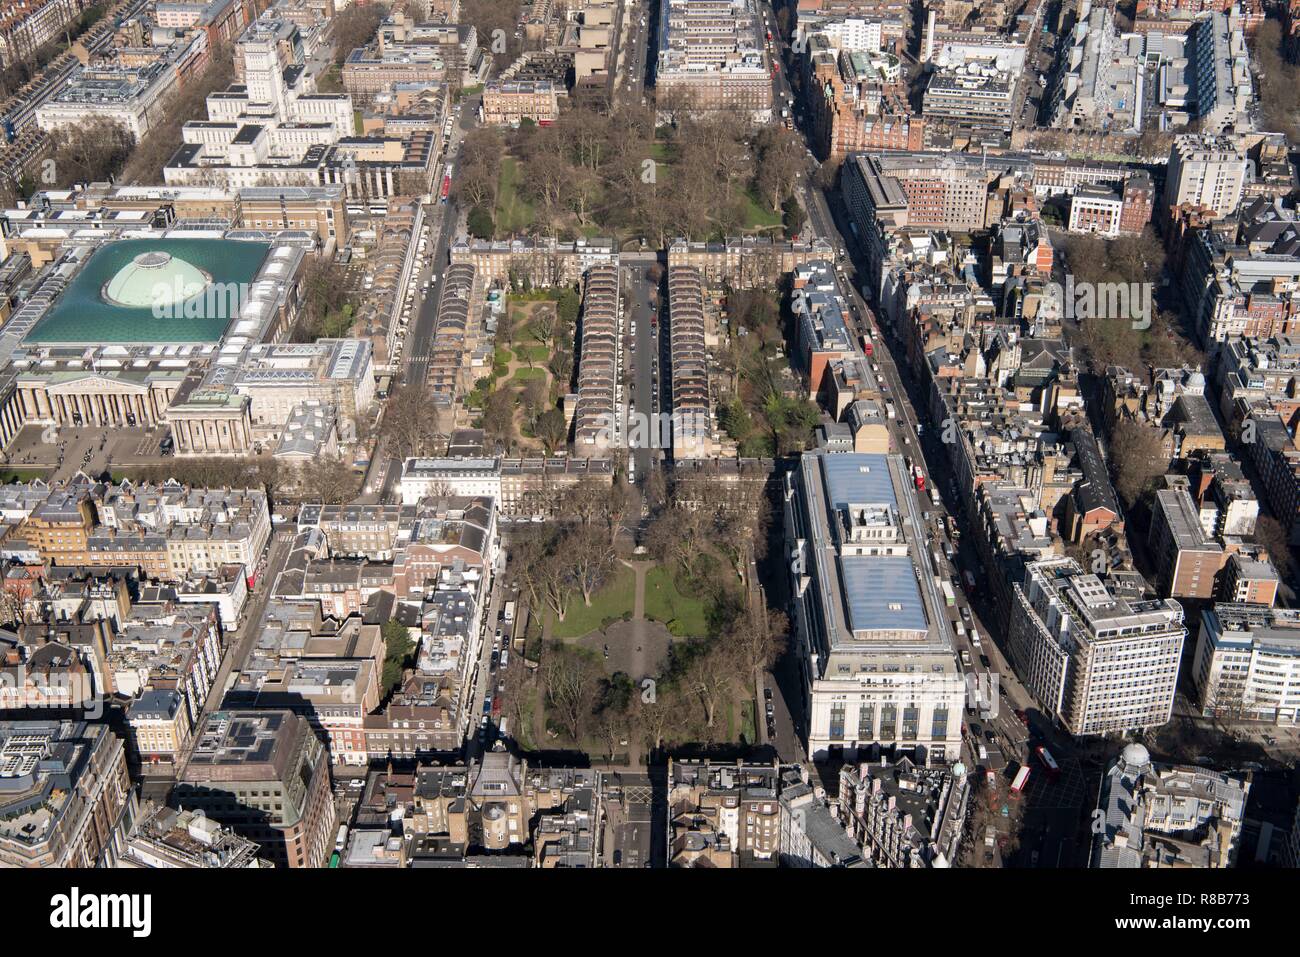 Bloomsbury Square Gardens e Russell Square Gardens, Bloomsbury, Londra, 2018. Creatore: Storico Inghilterra fotografo personale. Foto Stock